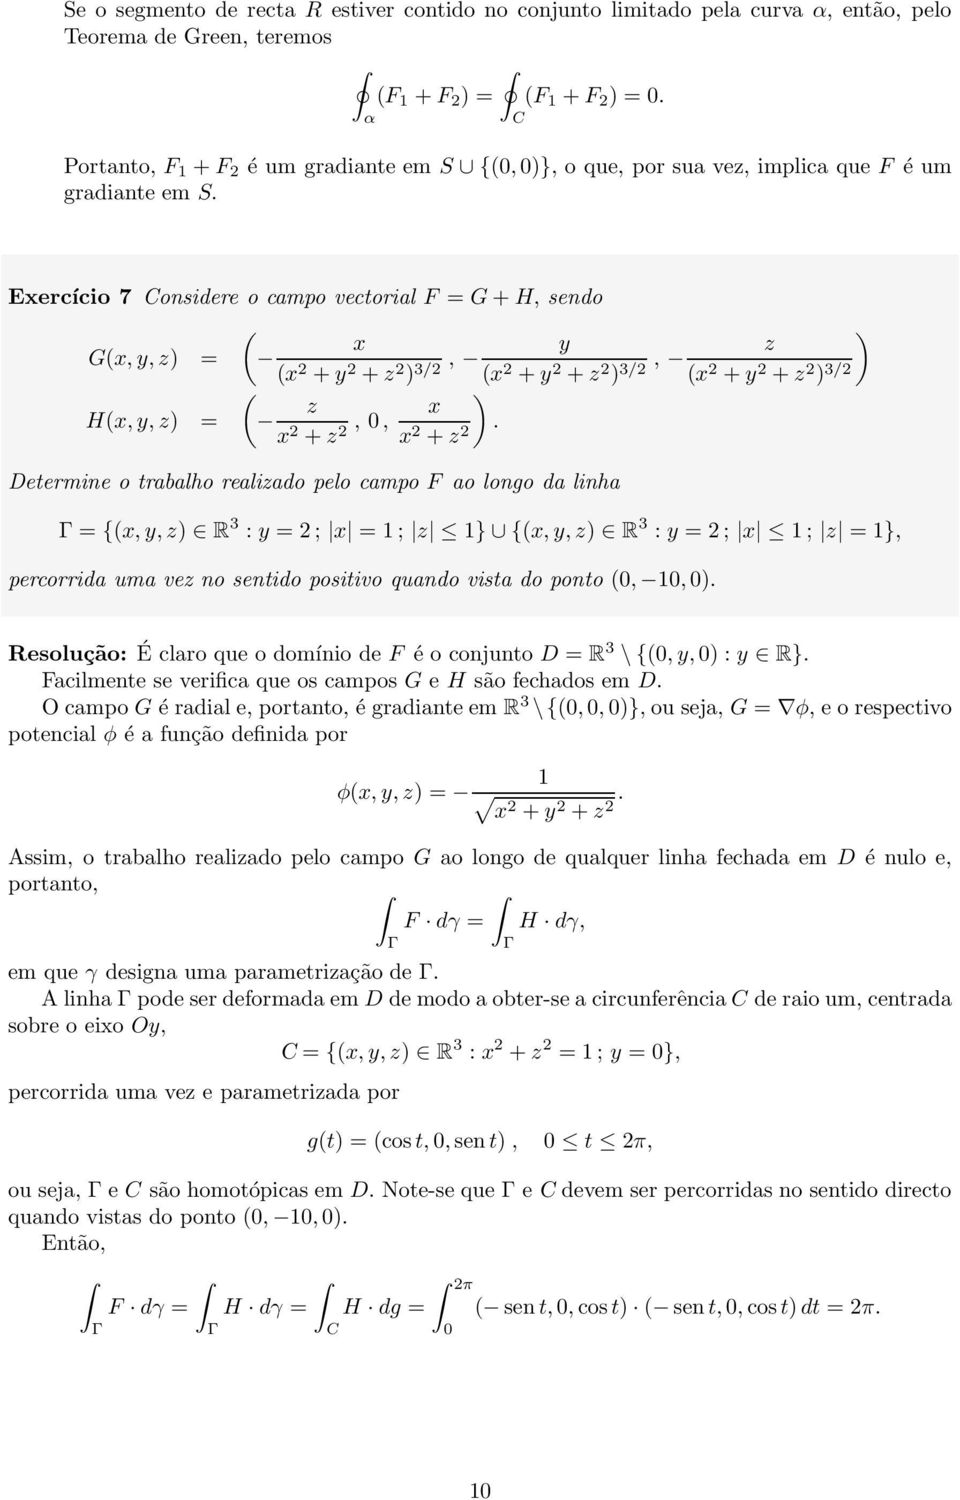 ercício 7 onsidere o campo vectorial F = G + H, sendo G,, z = + + z, 3/ + + z, z 3/ + + z 3/ H,, z = z + z,, + z.